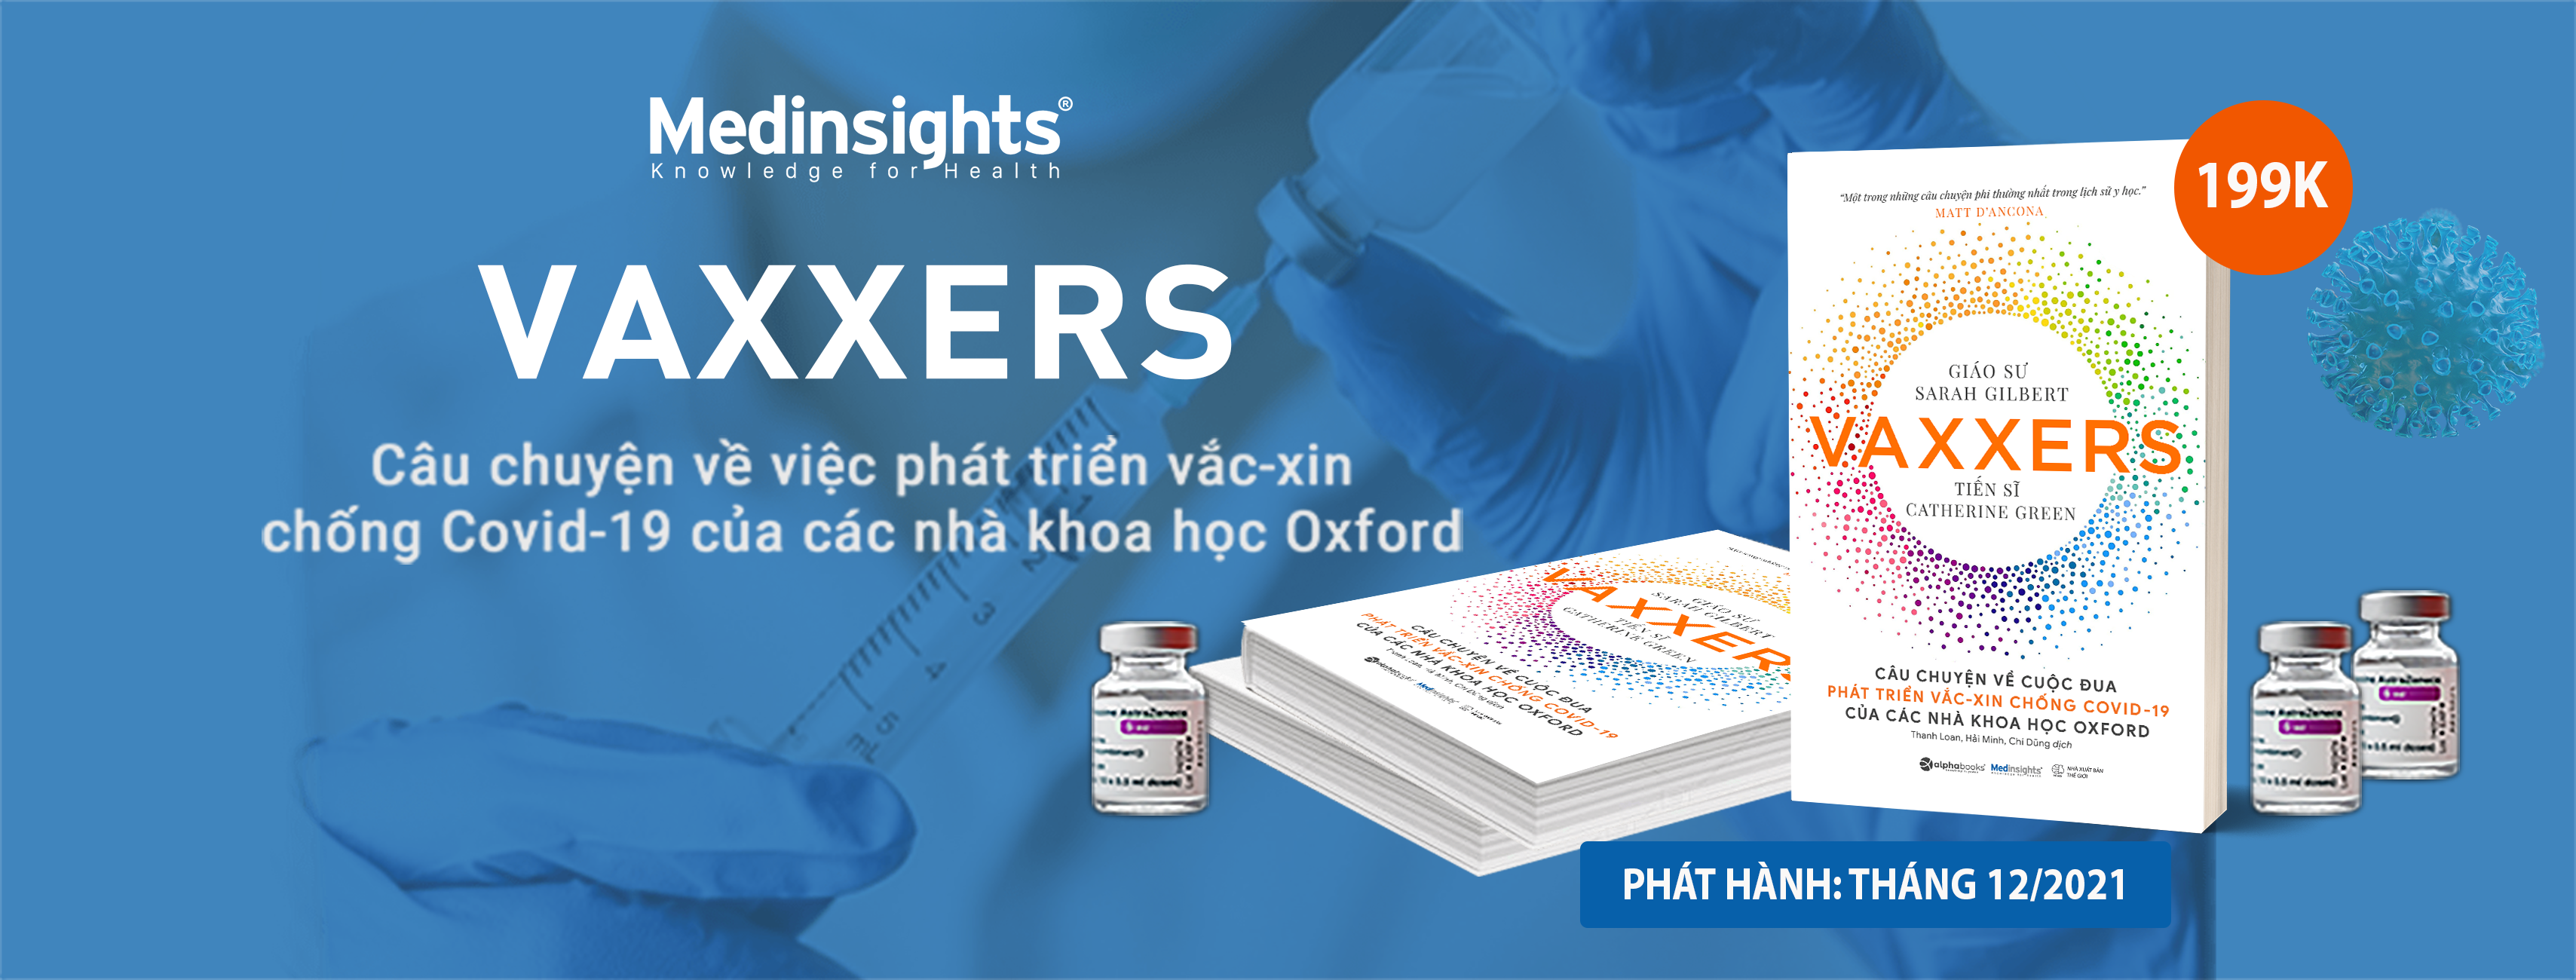 Vaxxers: Câu chuyện về việc phát triển vắc-xin chống Covid-19 của các nhà khoa học Oxford